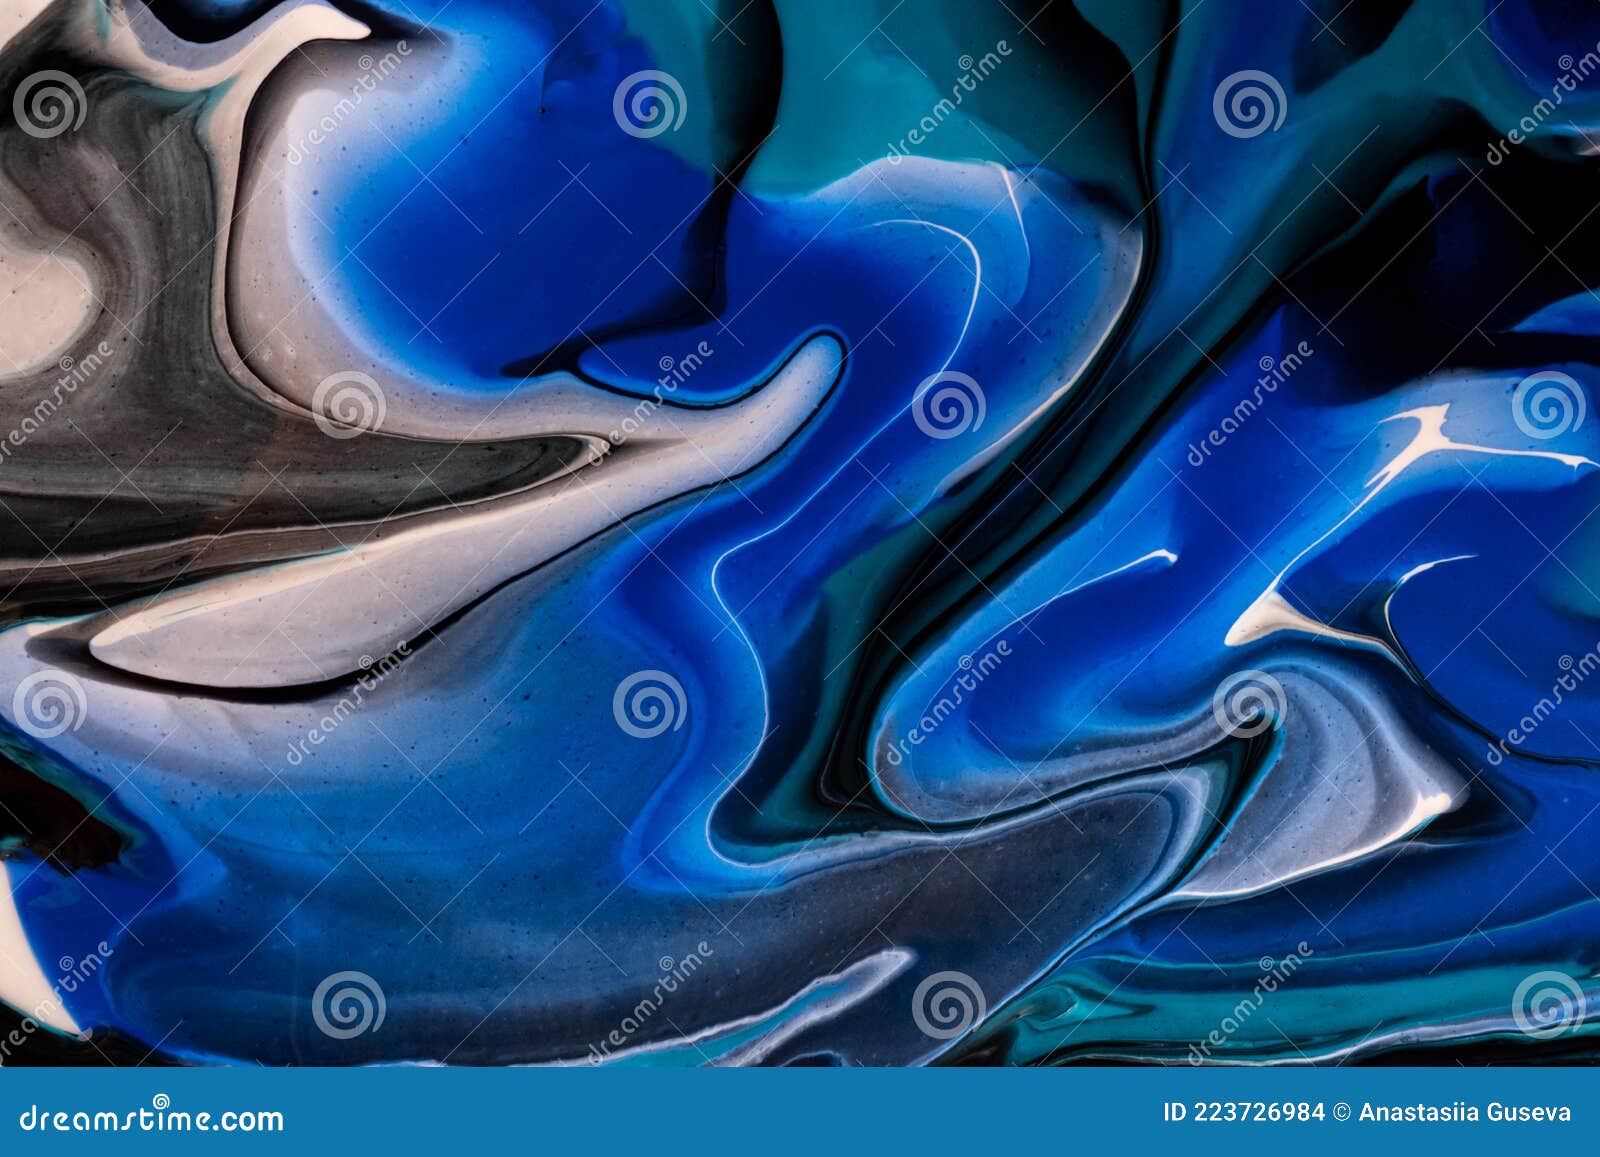 🎨 🖌 Fw Artists Encre Acrylique Liquide Bleu Marine